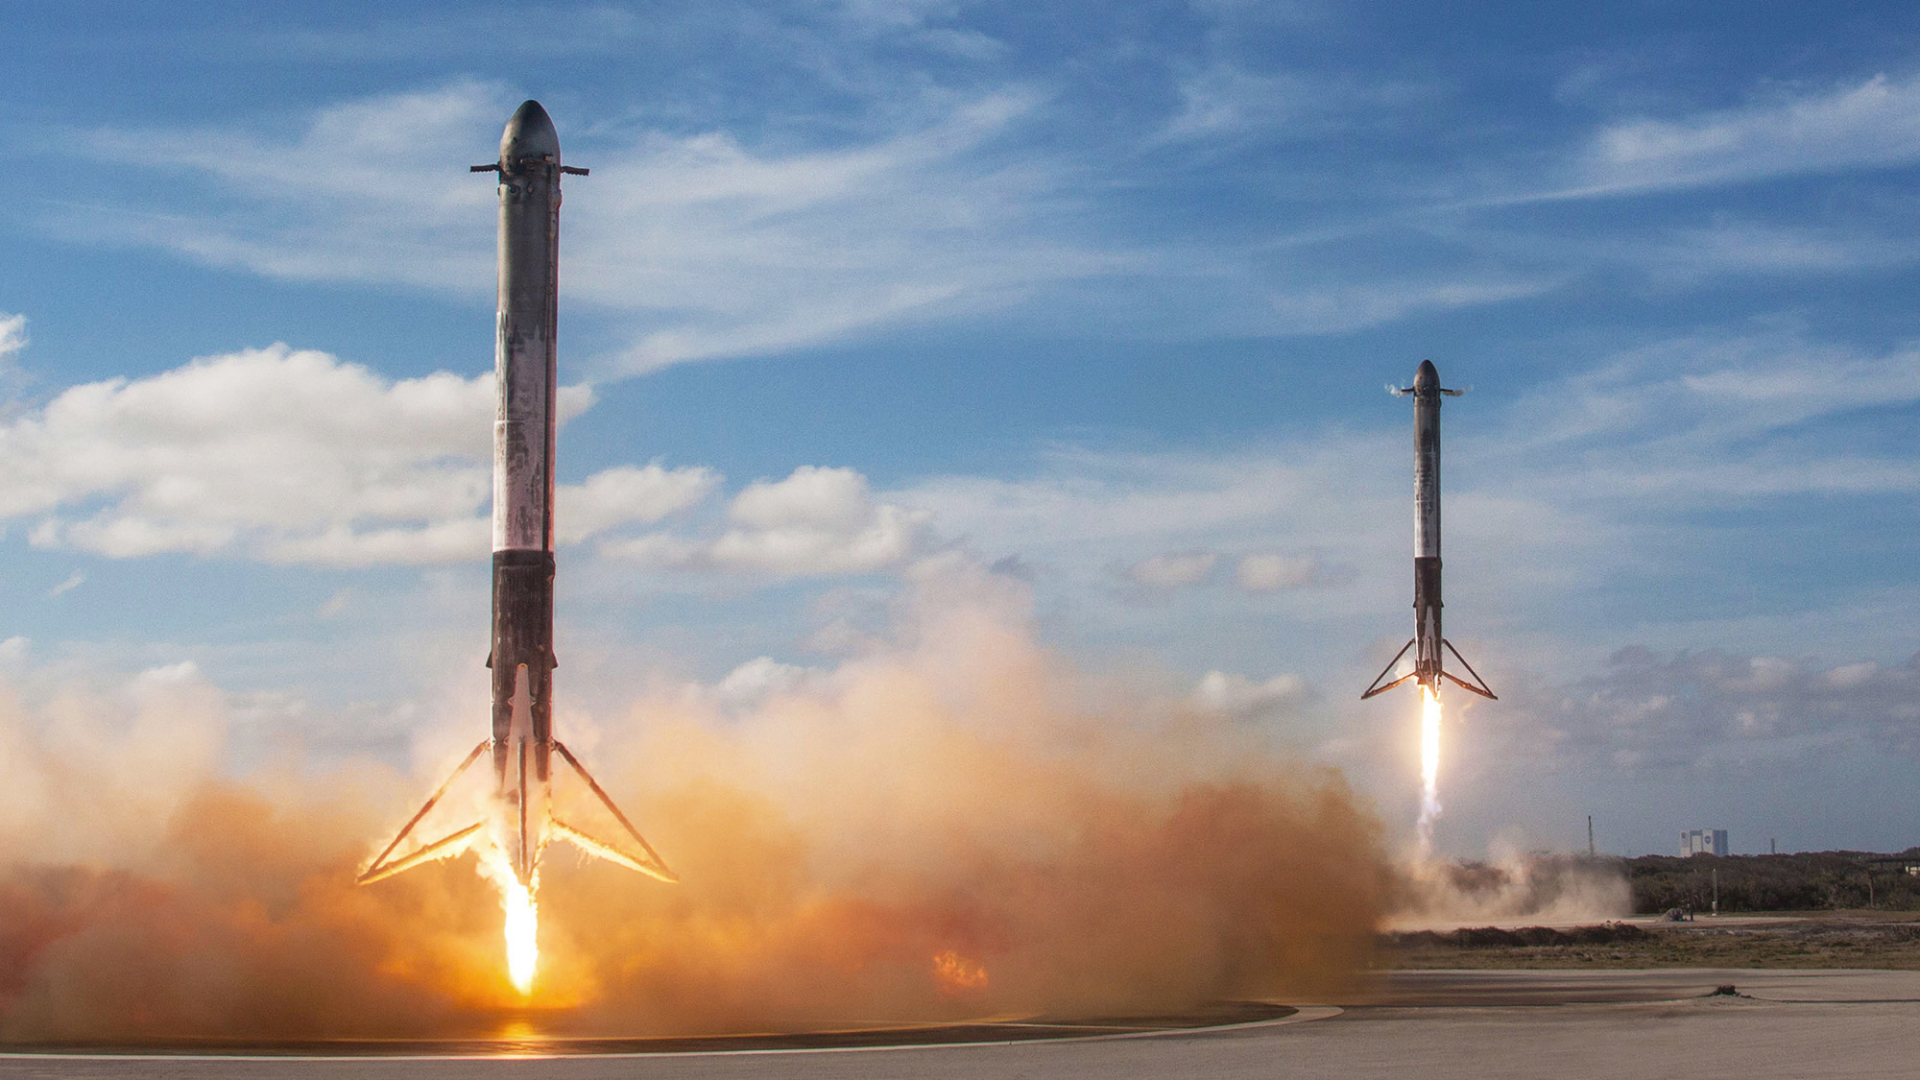 Hình nền HD: Falcon 9, SpaceX, tên lửa: Tải về bộ sưu tập hình nền HD về tên lửa Falcon 9 và những hình ảnh về SpaceX để thỏa mãn niềm đam mê tìm hiểu về công nghệ không gian. Với chất lượng HD, các hình ảnh này sẽ tỏa sáng trên màn hình của bạn và mang đến cho bạn trải nghiệm tuyệt vời. 